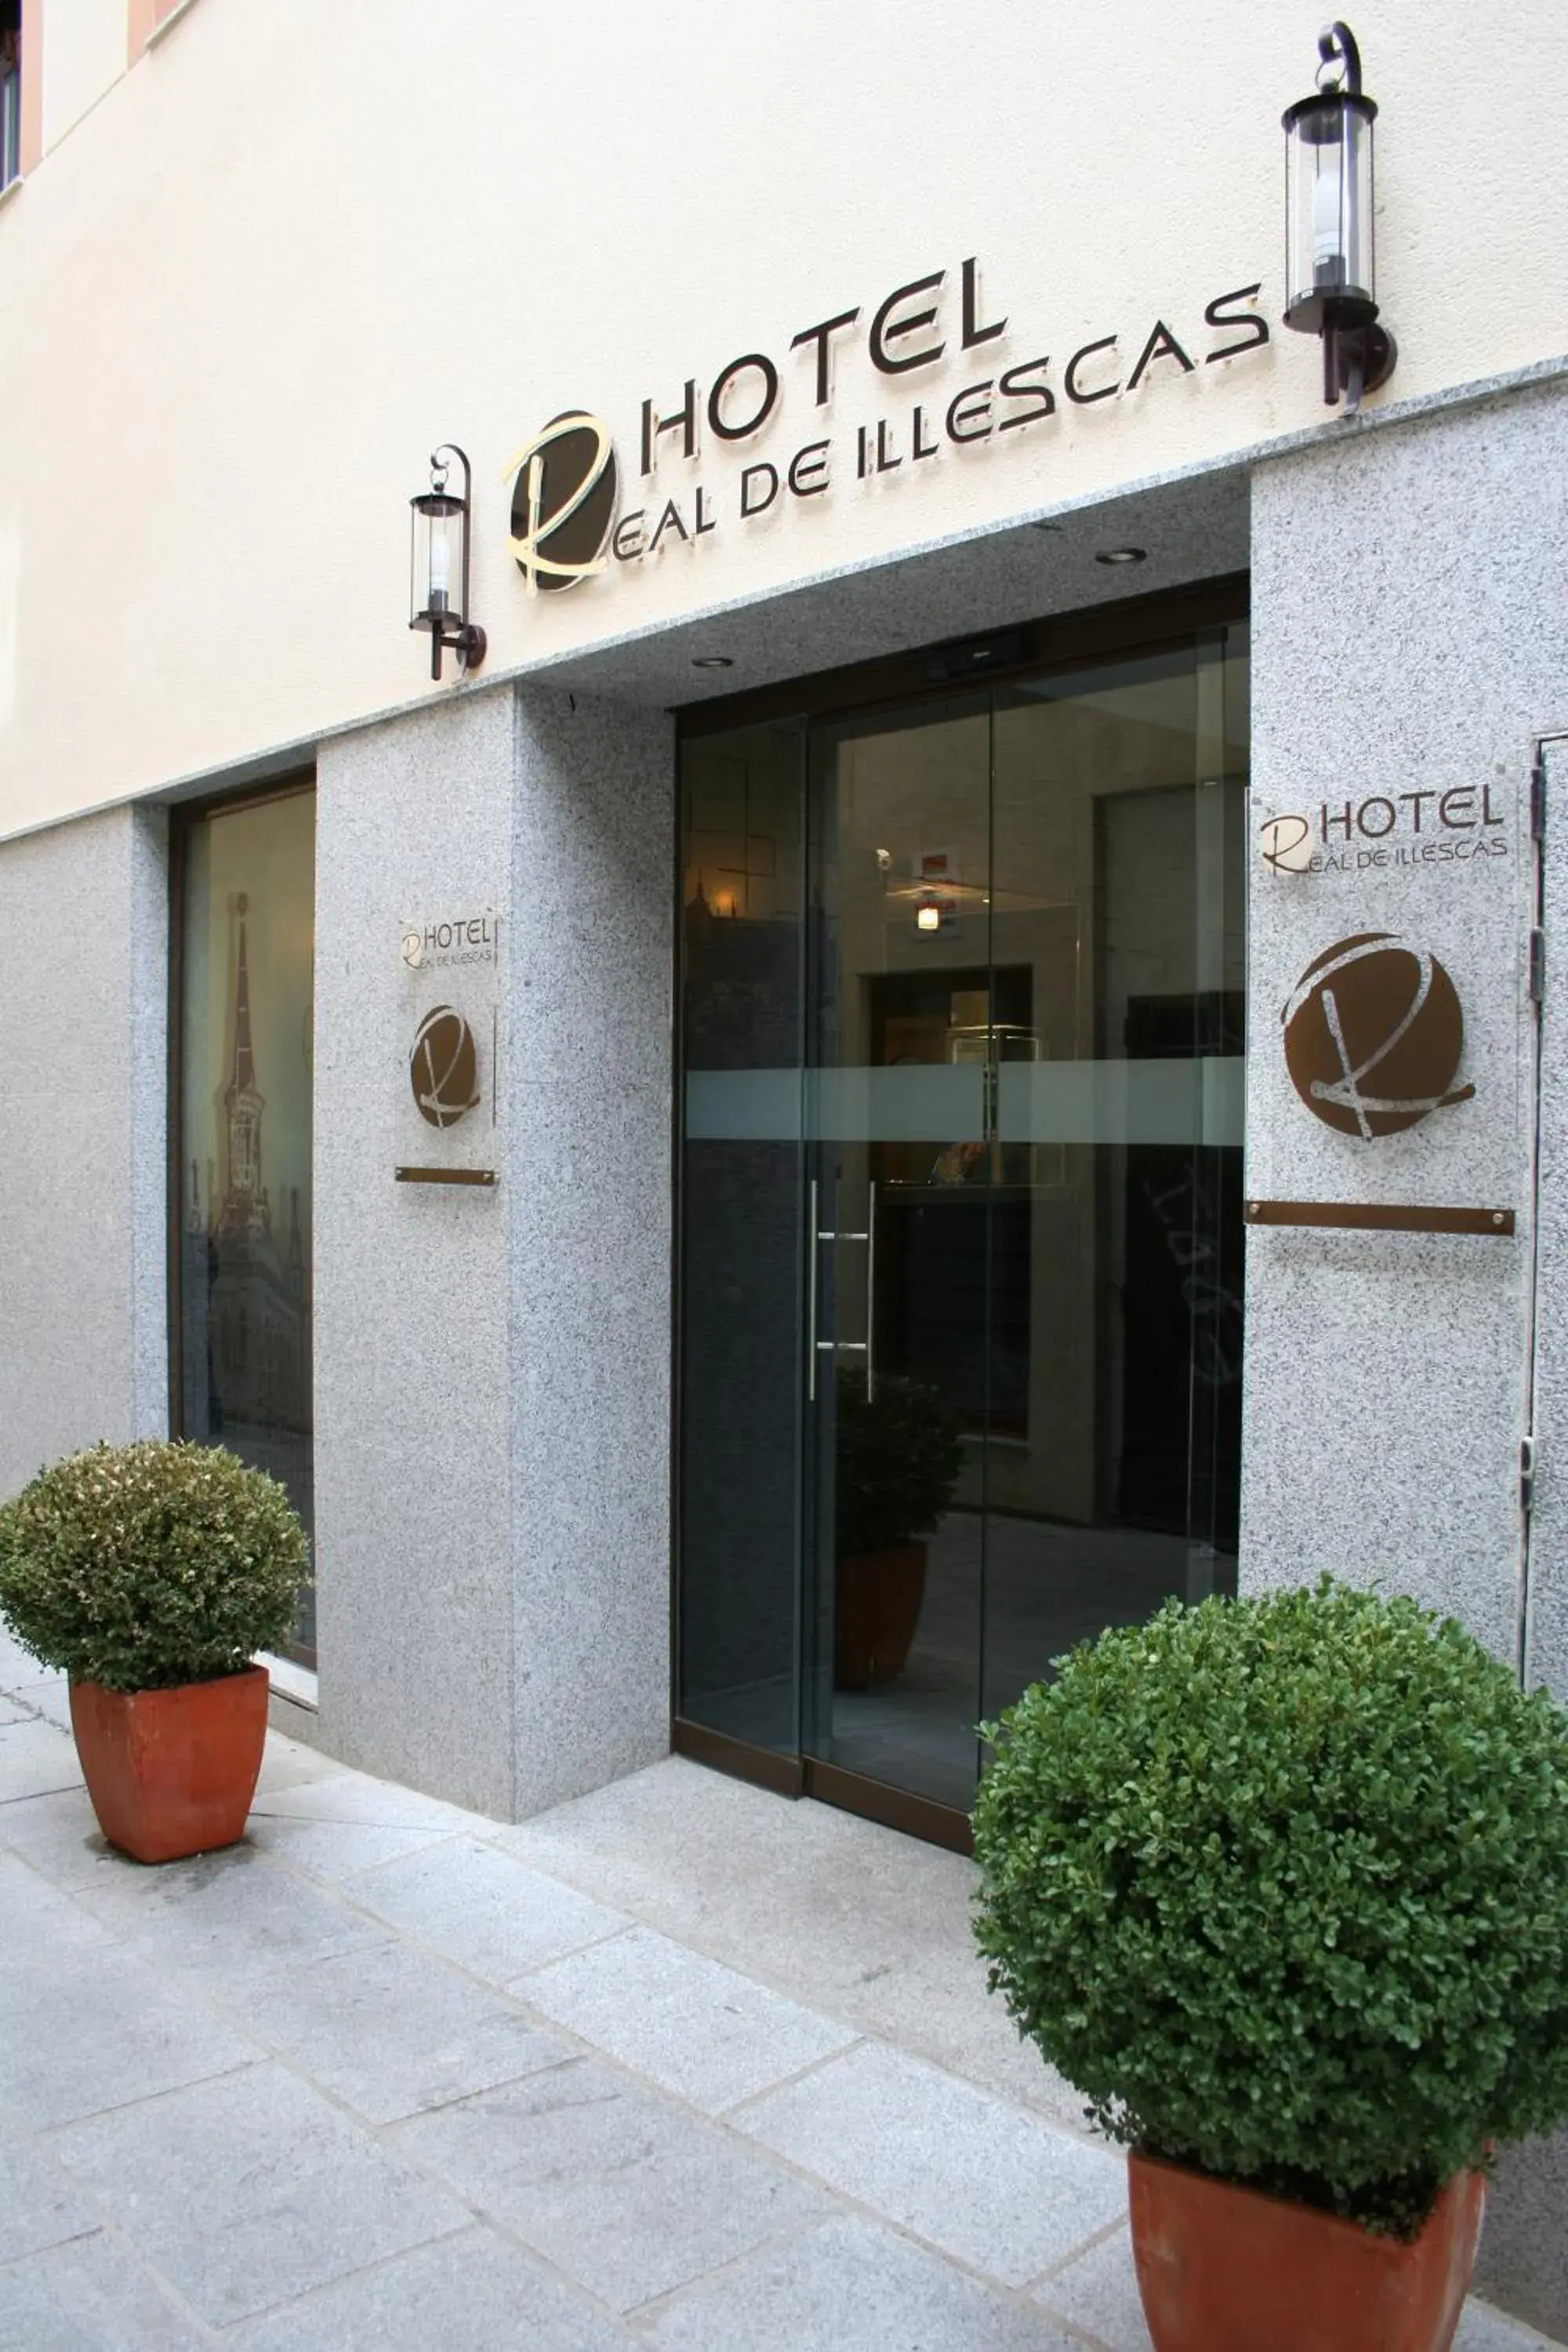 Property building in Hotel Real de Illescas